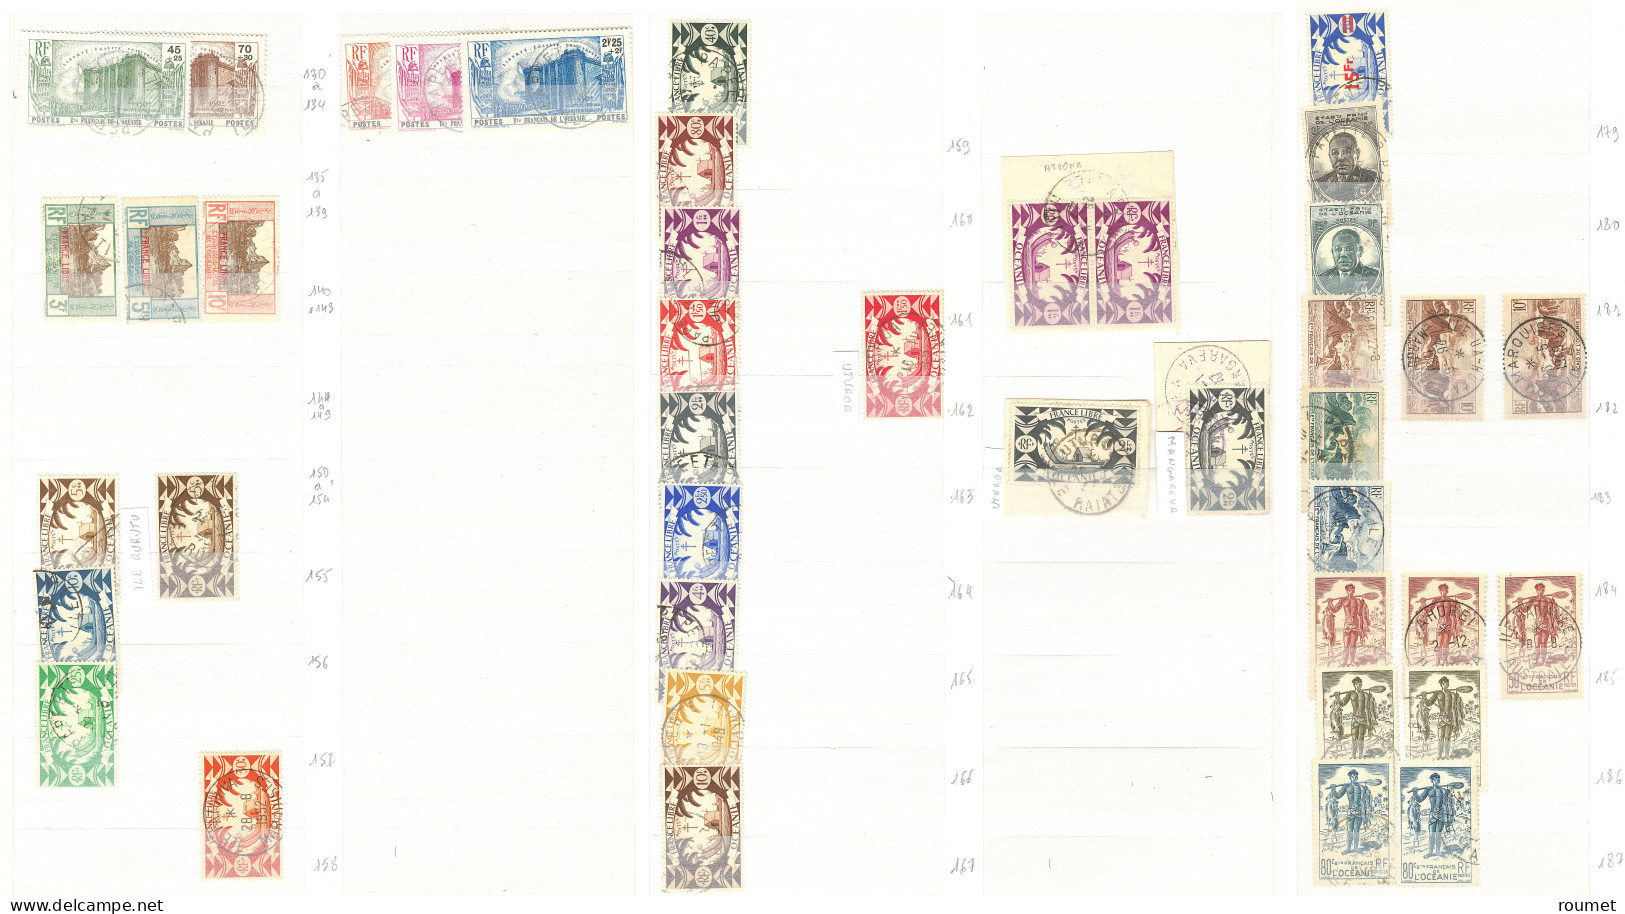 Collection. Océanie 1913-1956 (Poste, PA), nombreuses obl choisies de petits bureaux entre Huahine et Uturoa . - TB